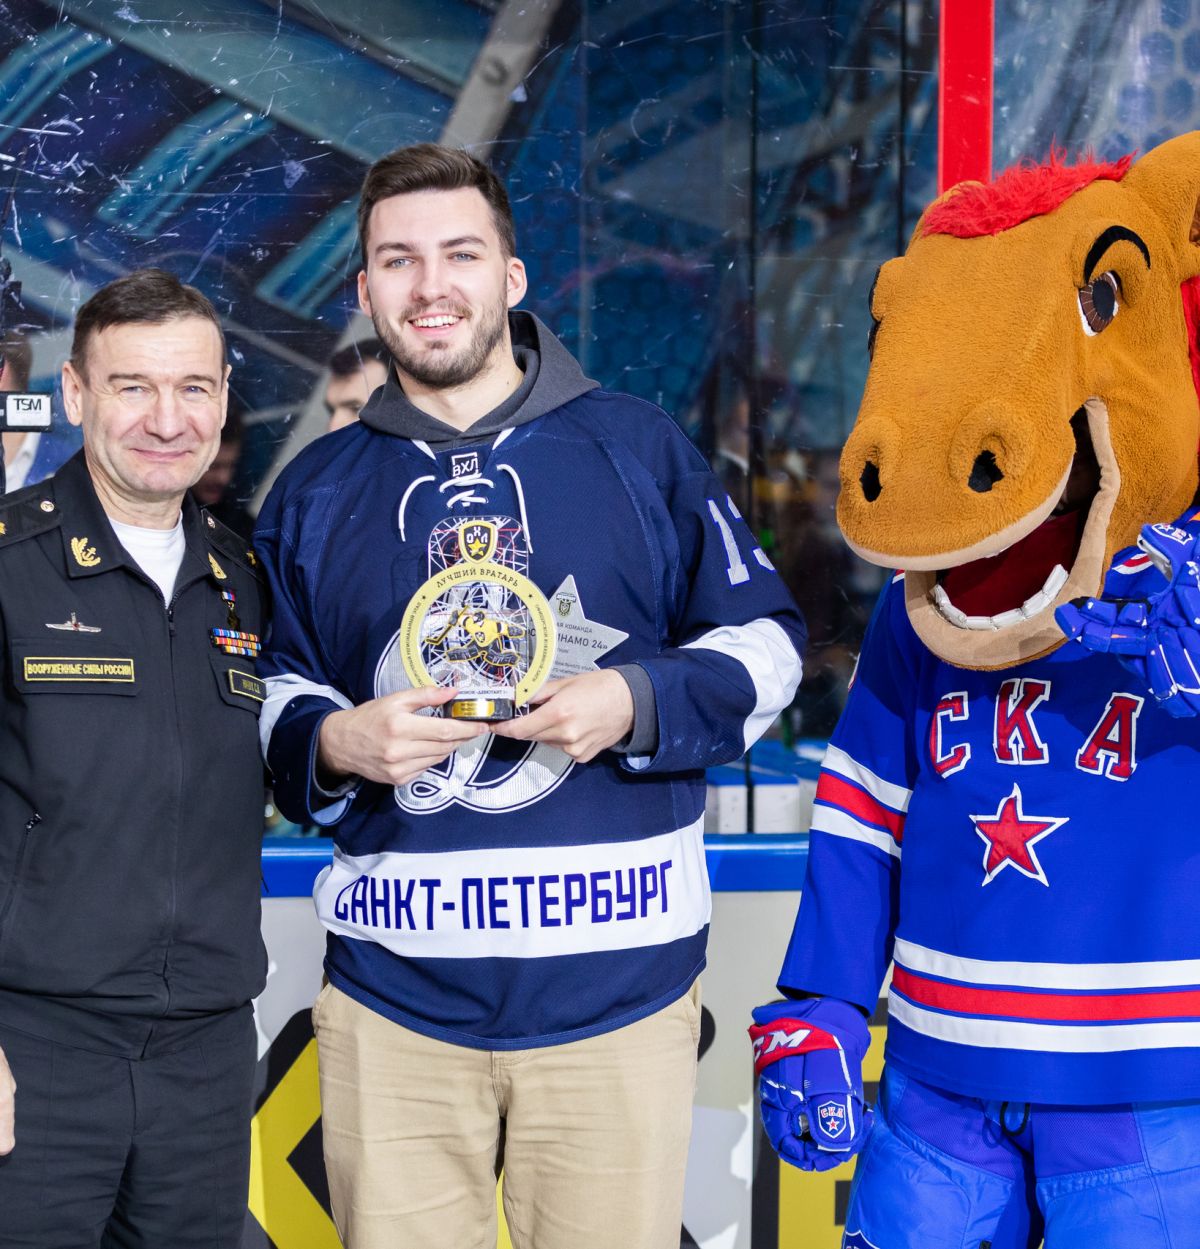 Определены лучшие игроки 2-го сезона Офицерской Хоккейной Лиги в Санкт-Петербурге